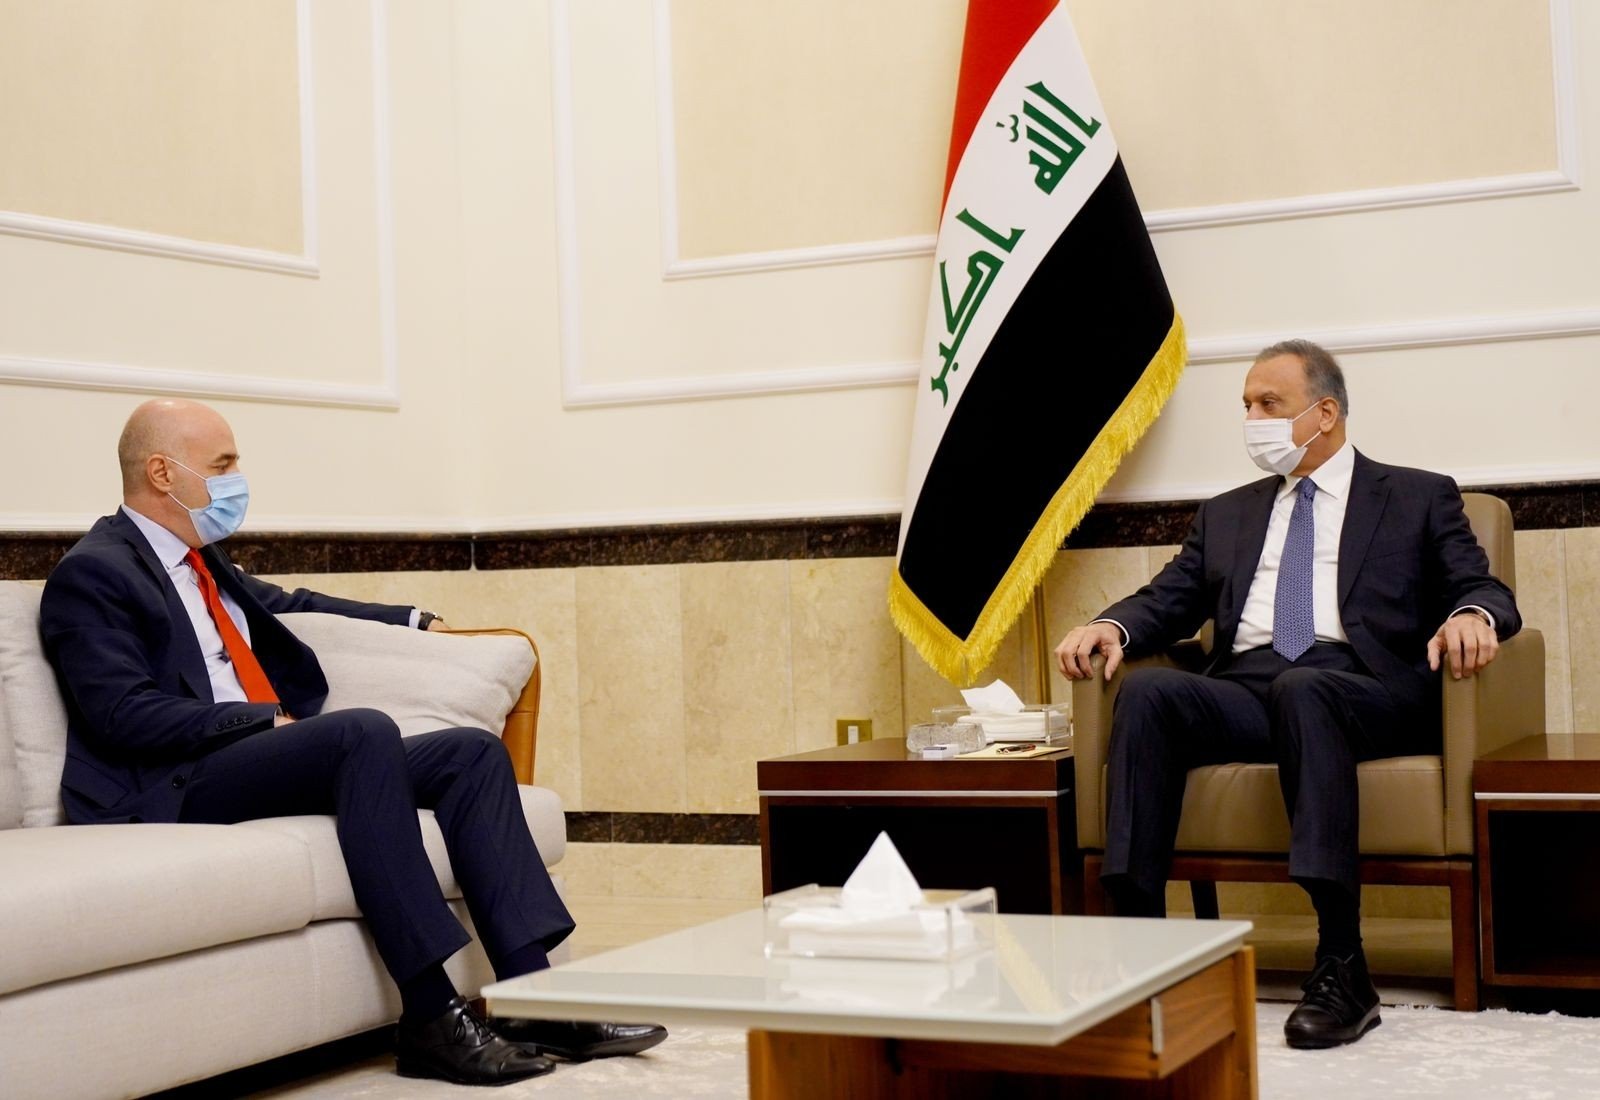 Ankara’s envoy to Iraq Ali Rıza Güney and Prime Minister Mustafa al-Kadhimi discuss ties in Iraq, Jan. 23, 2022 (IHA Photo)